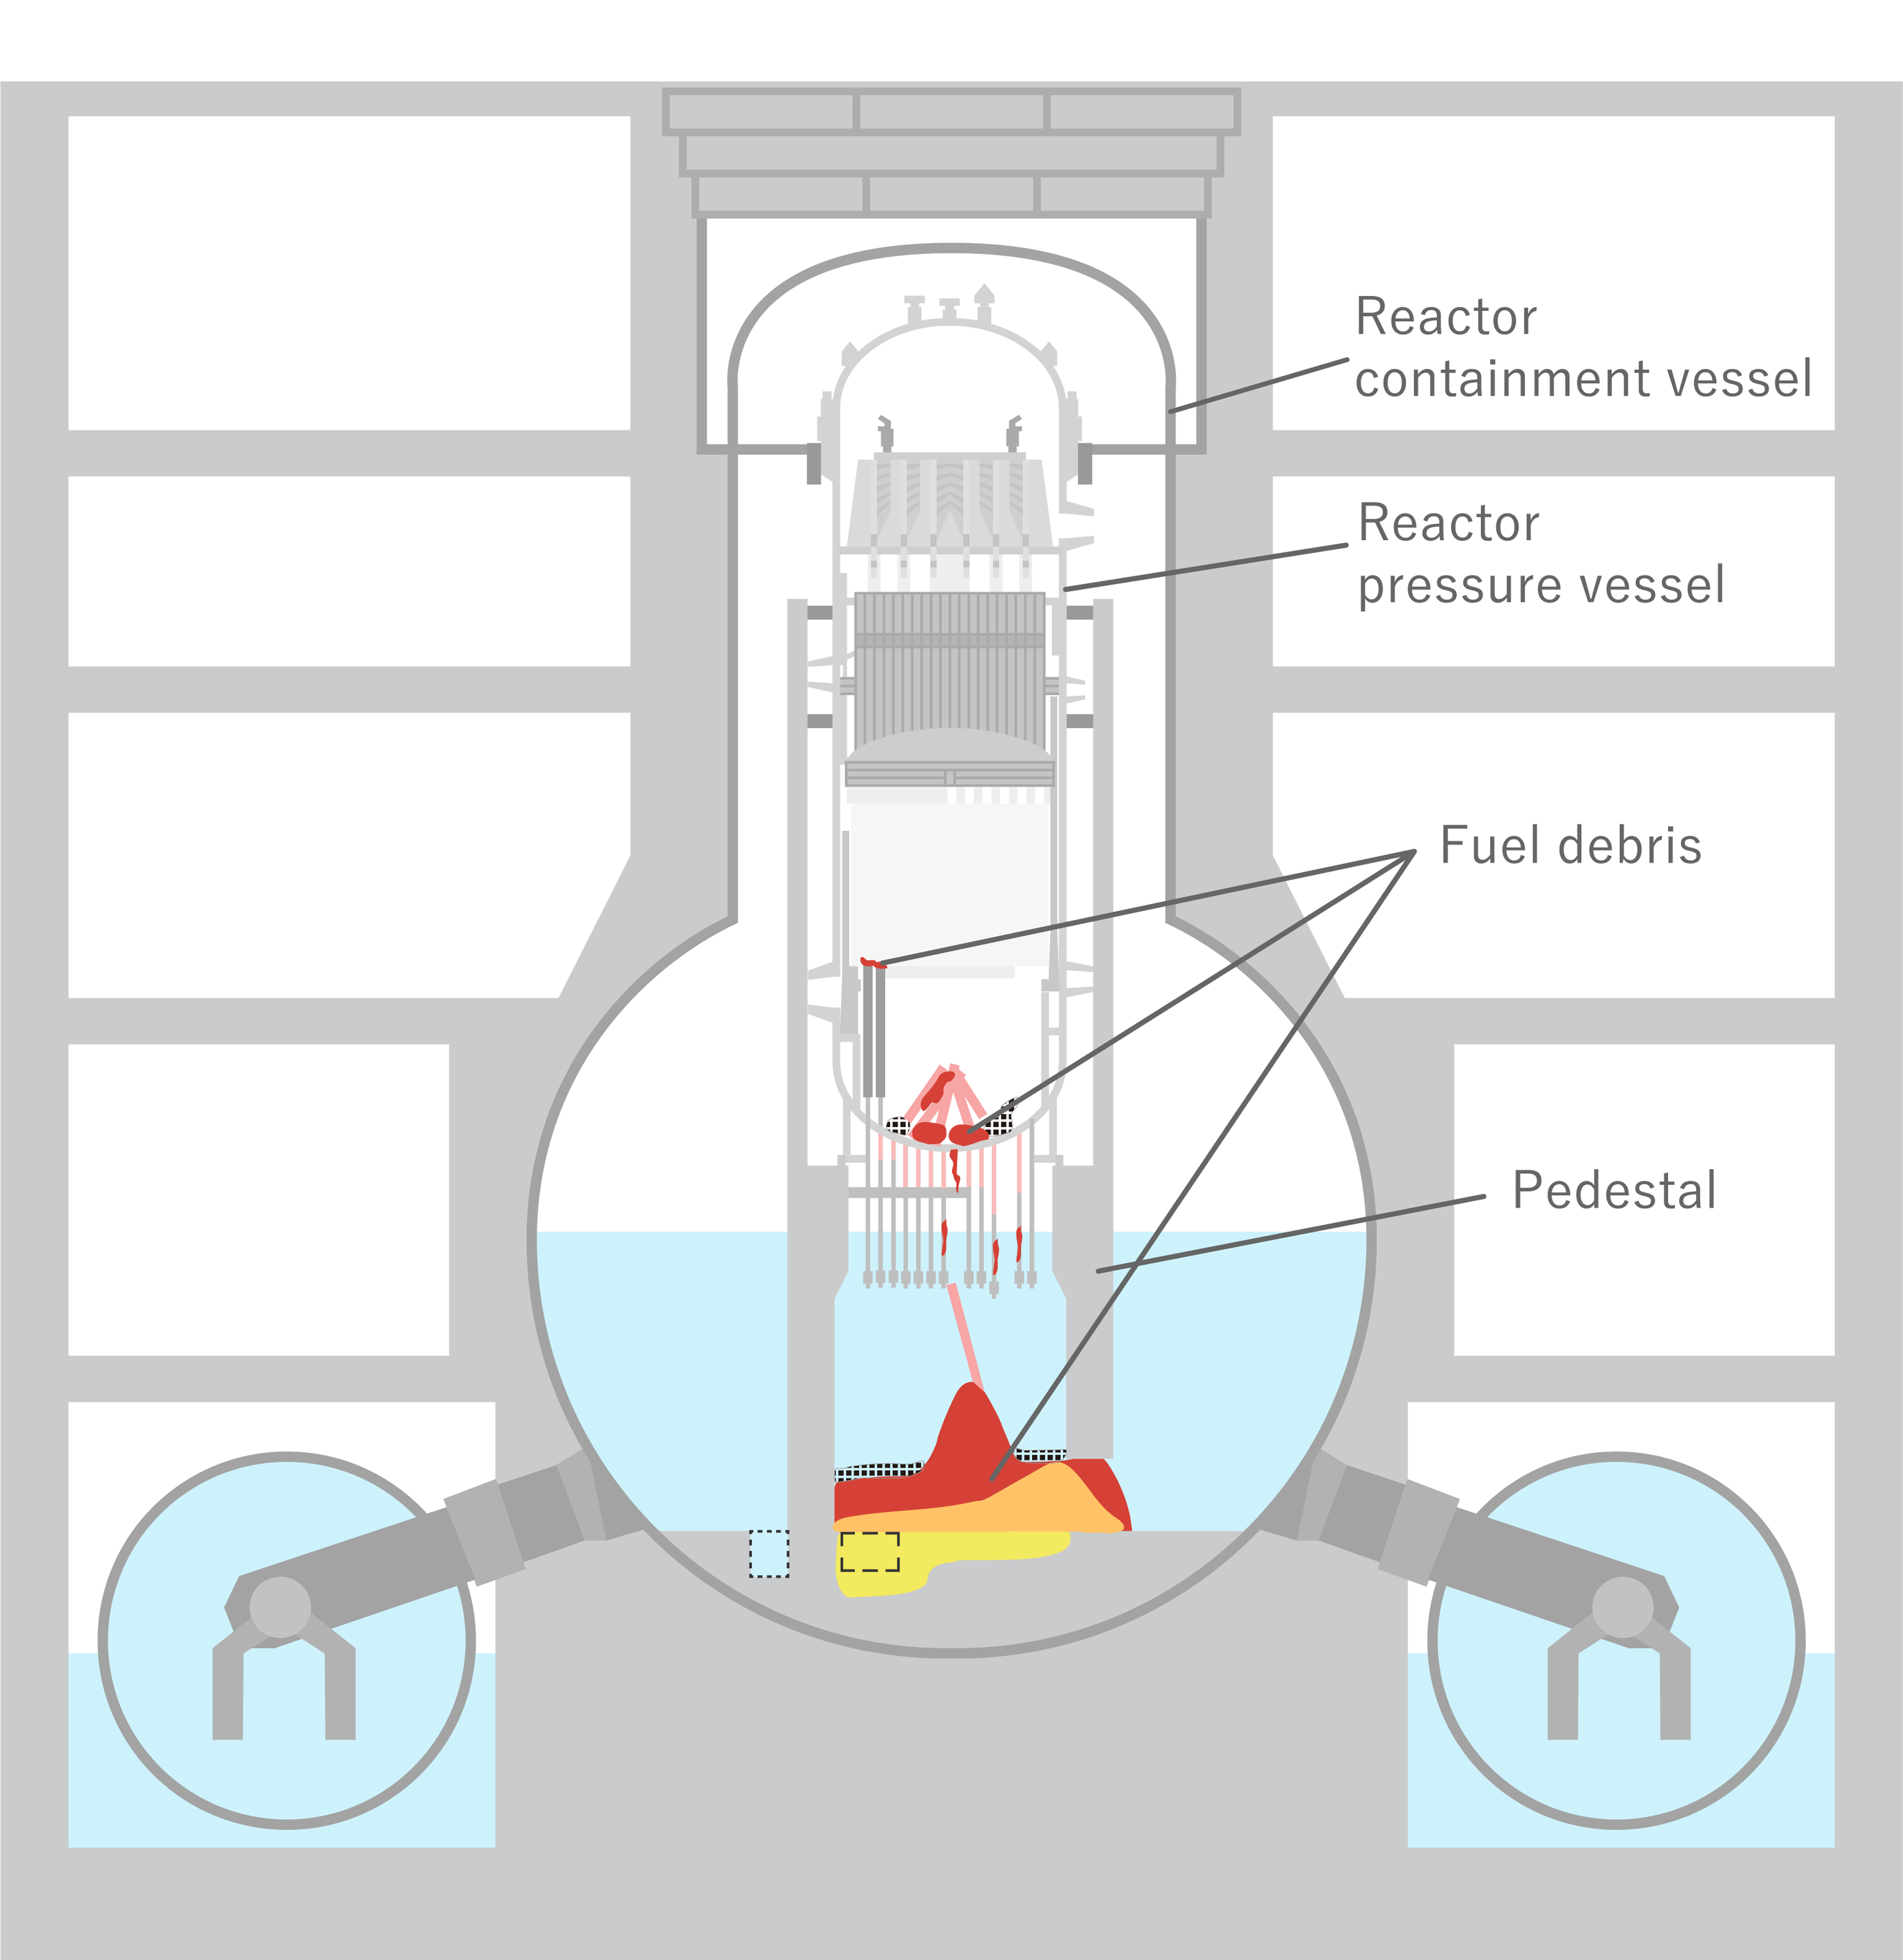 Survey inside containment vessel